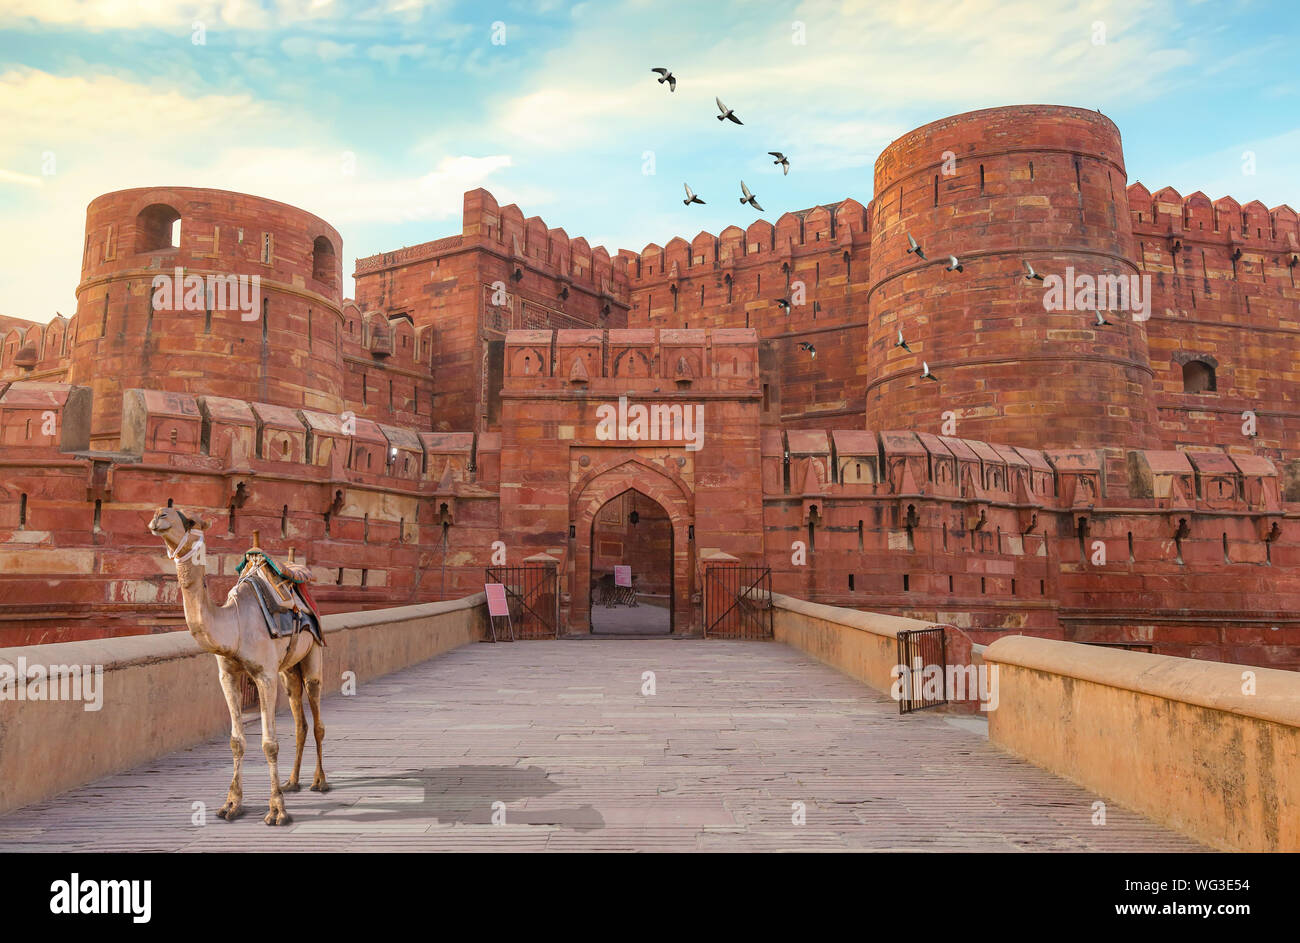 La fortaleza de Agra - histórica fortaleza de piedra arenisca roja de la India medieval al amanecer. La fortaleza de Agra es un sitio del Patrimonio Mundial de la UNESCO en la ciudad de Agra, India. Foto de stock